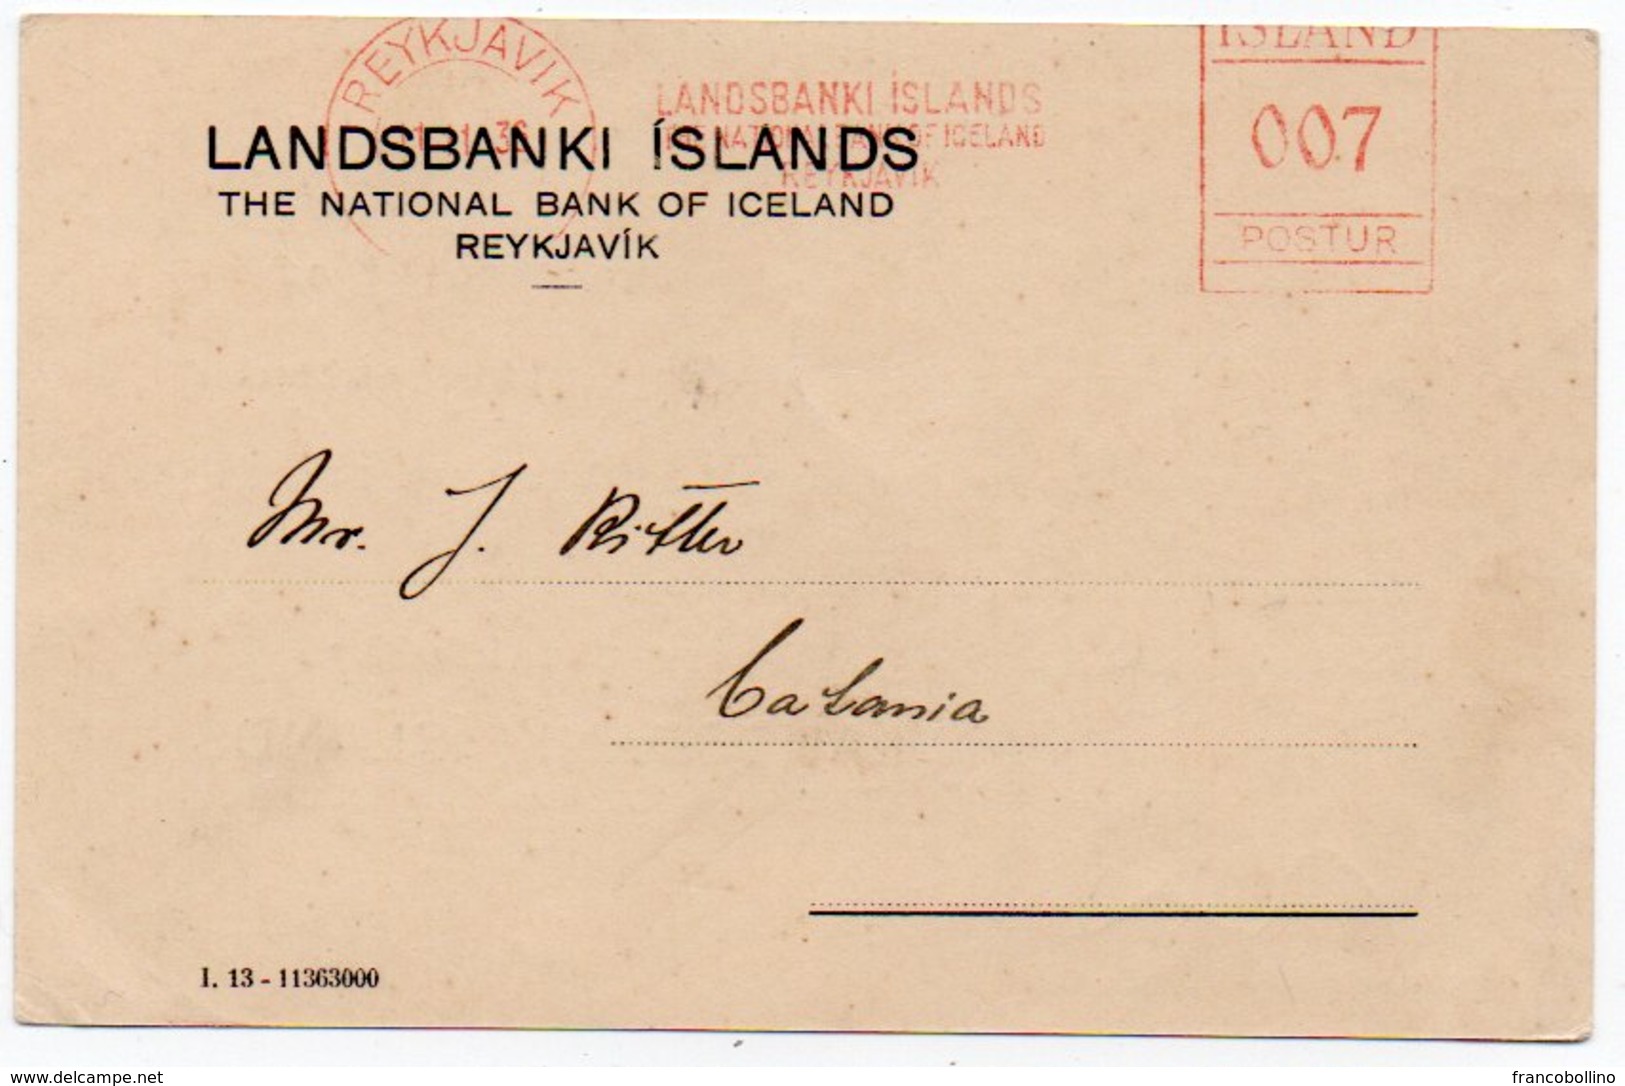 ICELAND - THE LANDSBANKI ISLANDS/NATIONAL BANK OF ICELAND 1936 - RED METER / EMA - Vignettes D'affranchissement (Frama)